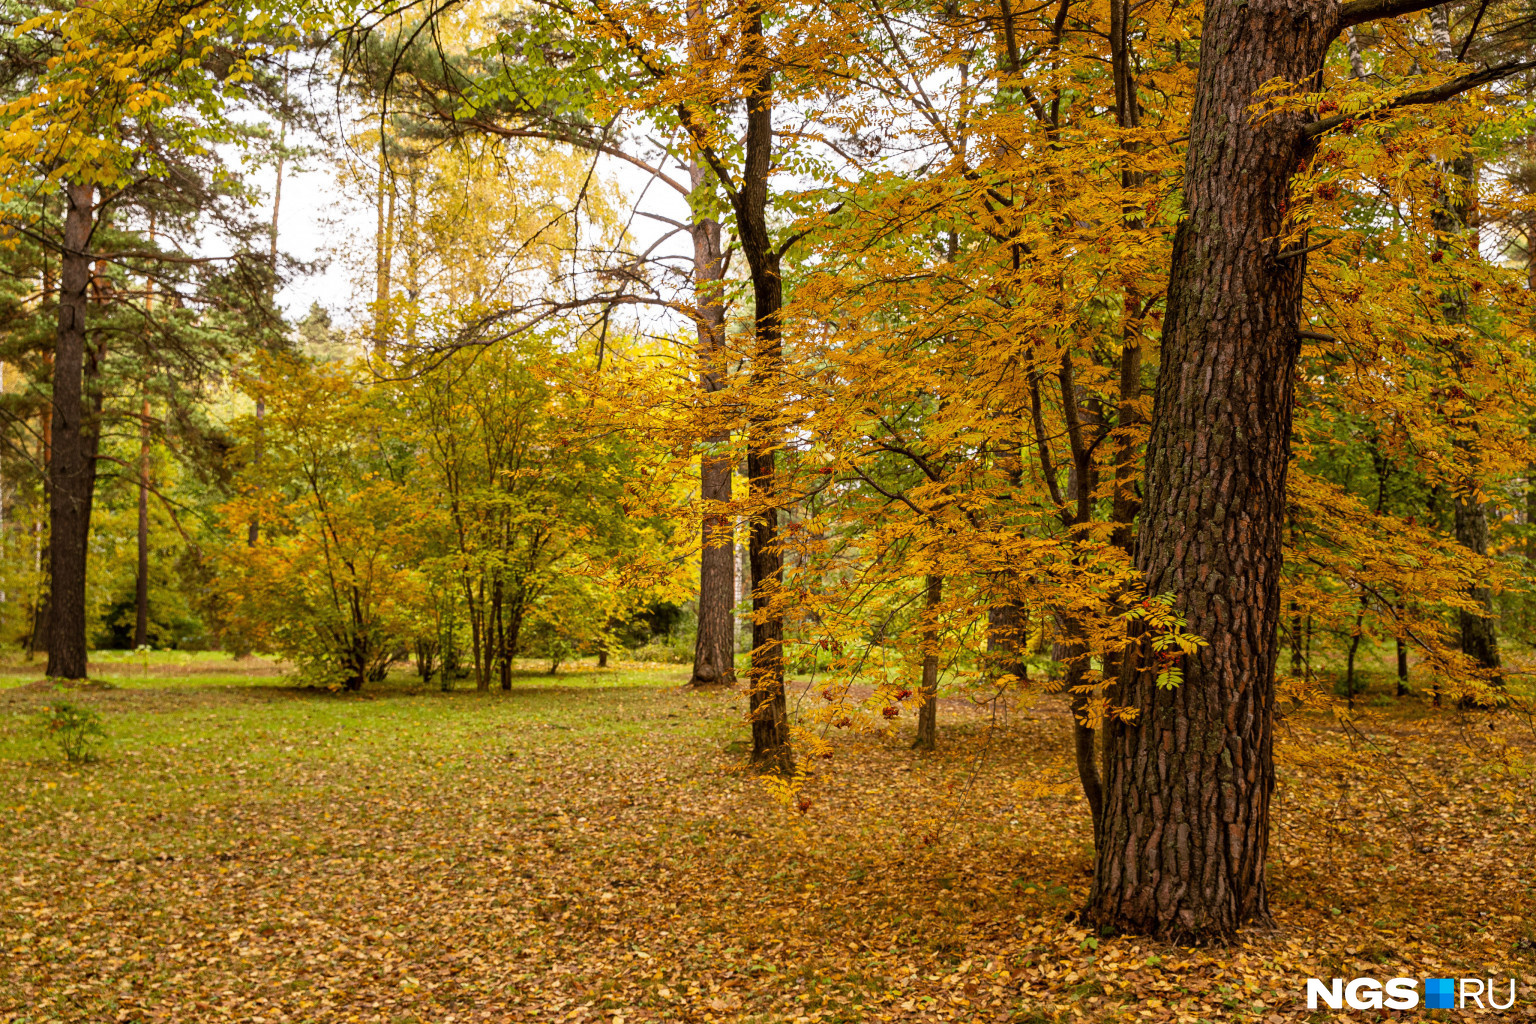 Осенний Ботанический сад — прекрасное место для тихих задумчивых прогулок